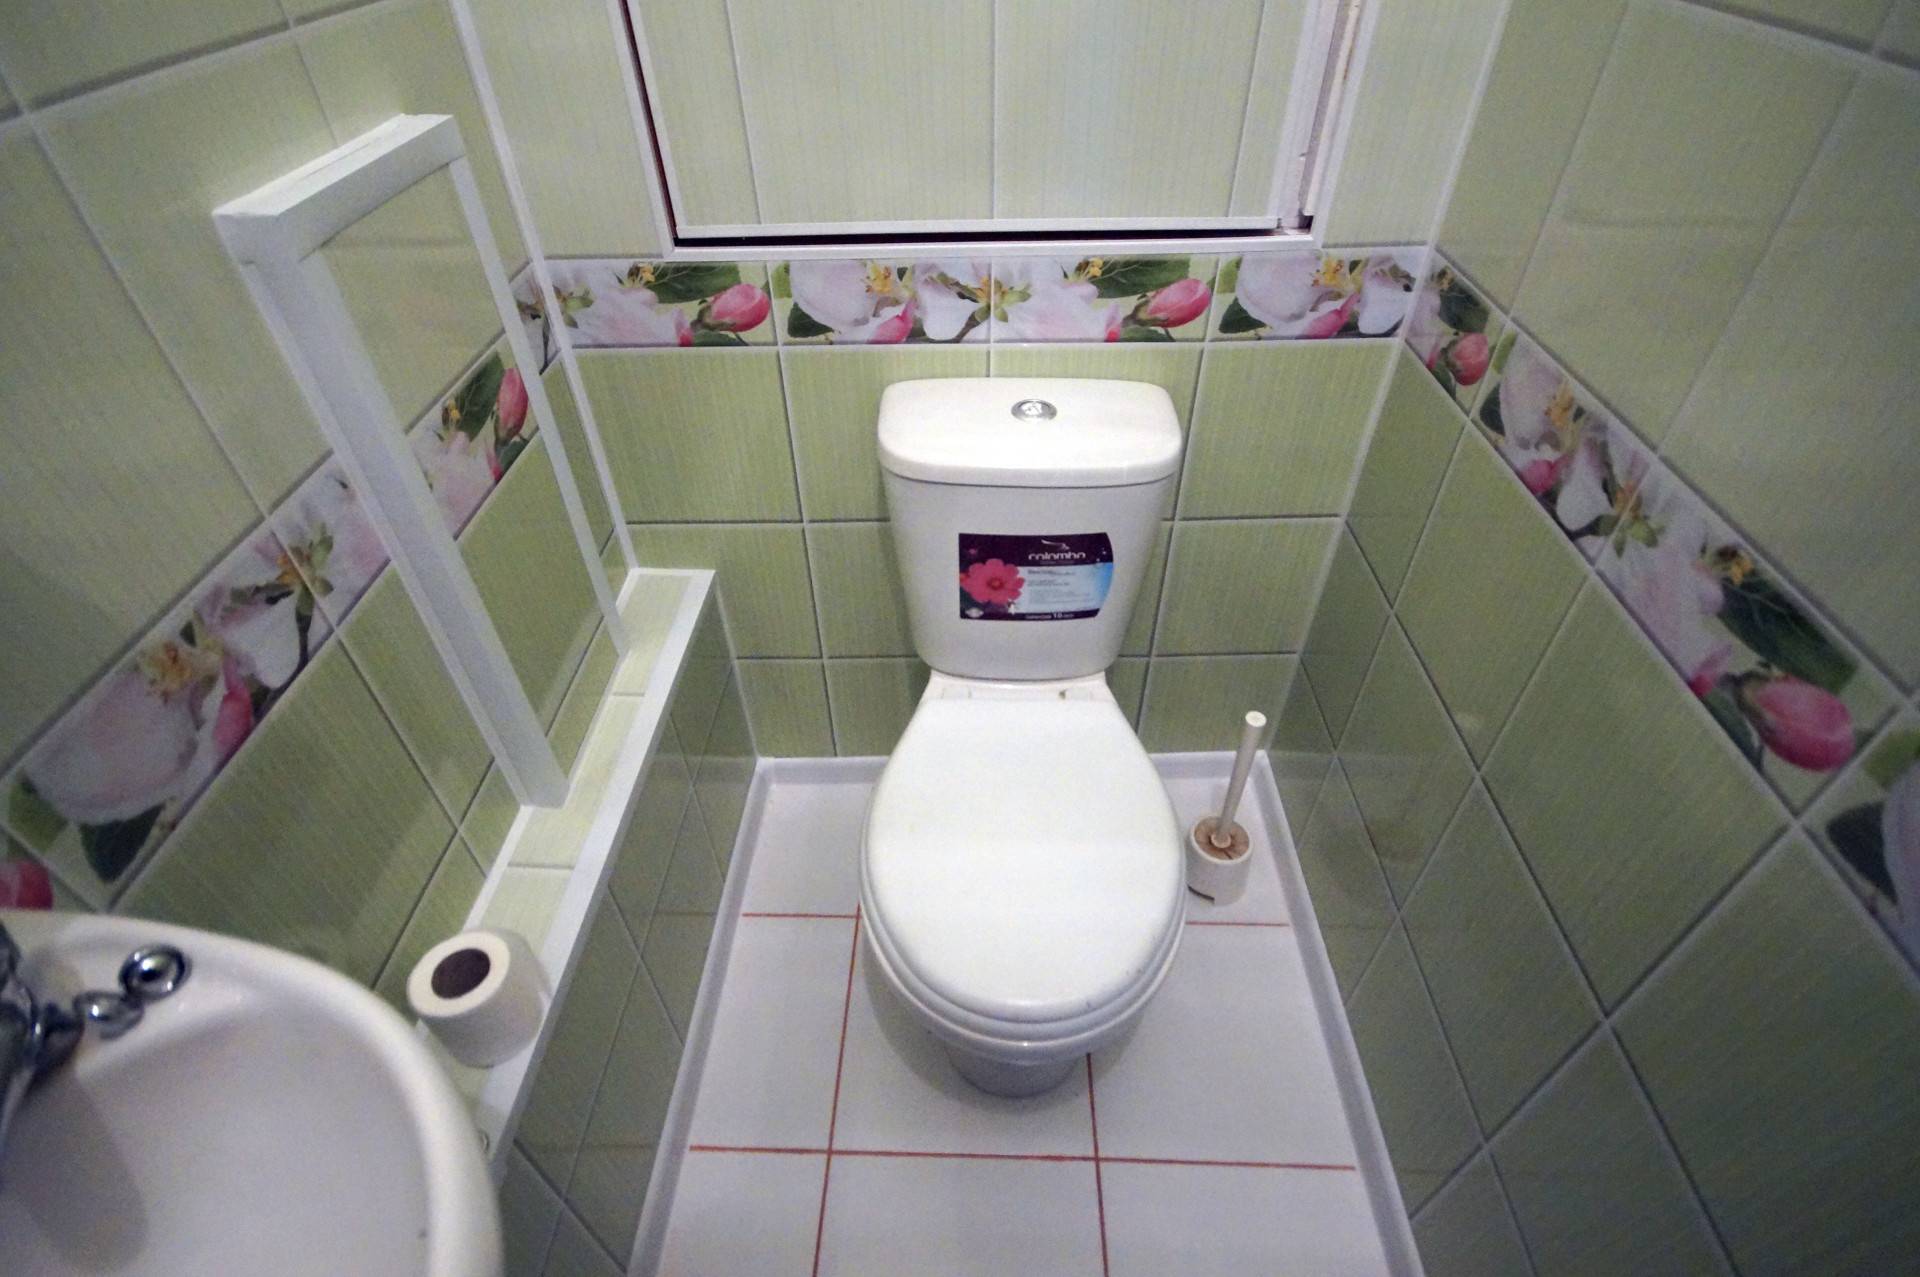 Отделка туалета пластиковыми панелями – оптимальный вариант для изысканного дизайна